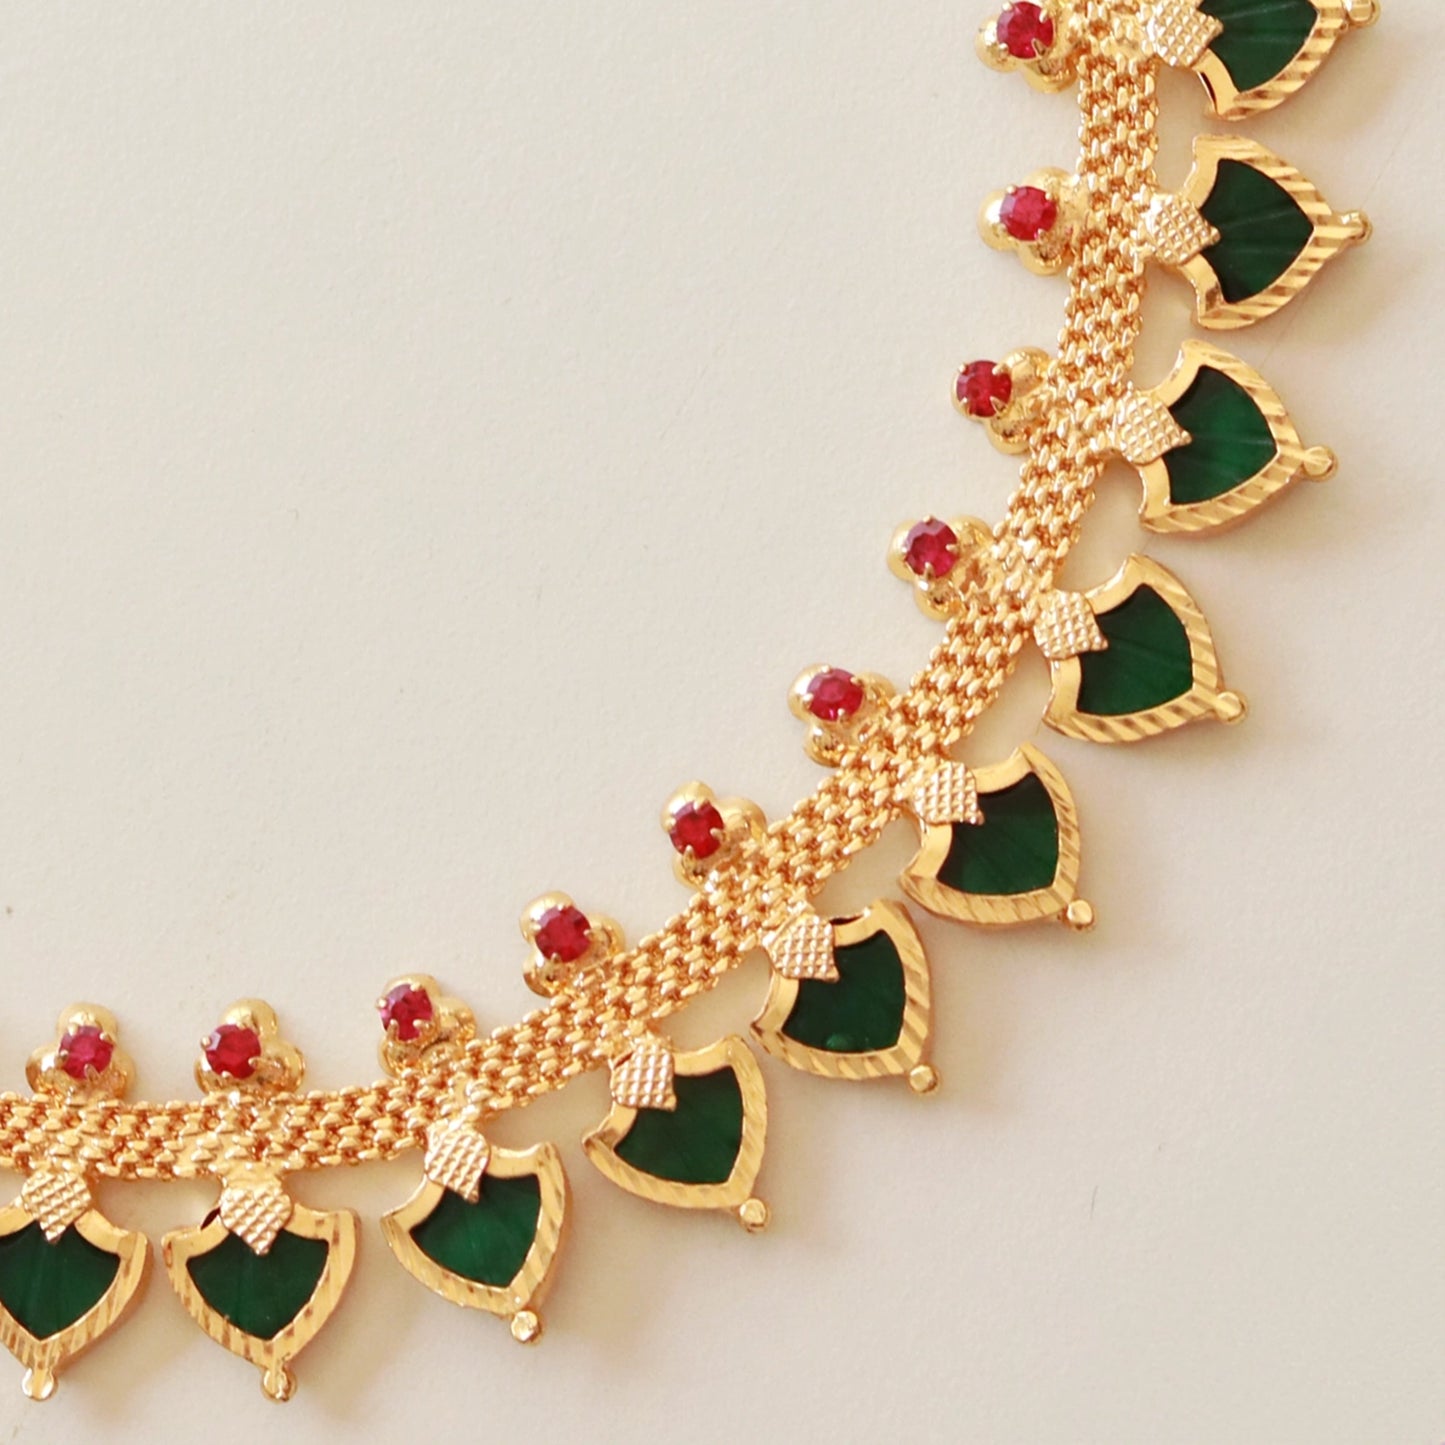 Kerala Palakka Necklace with Leaf-shaped Motif